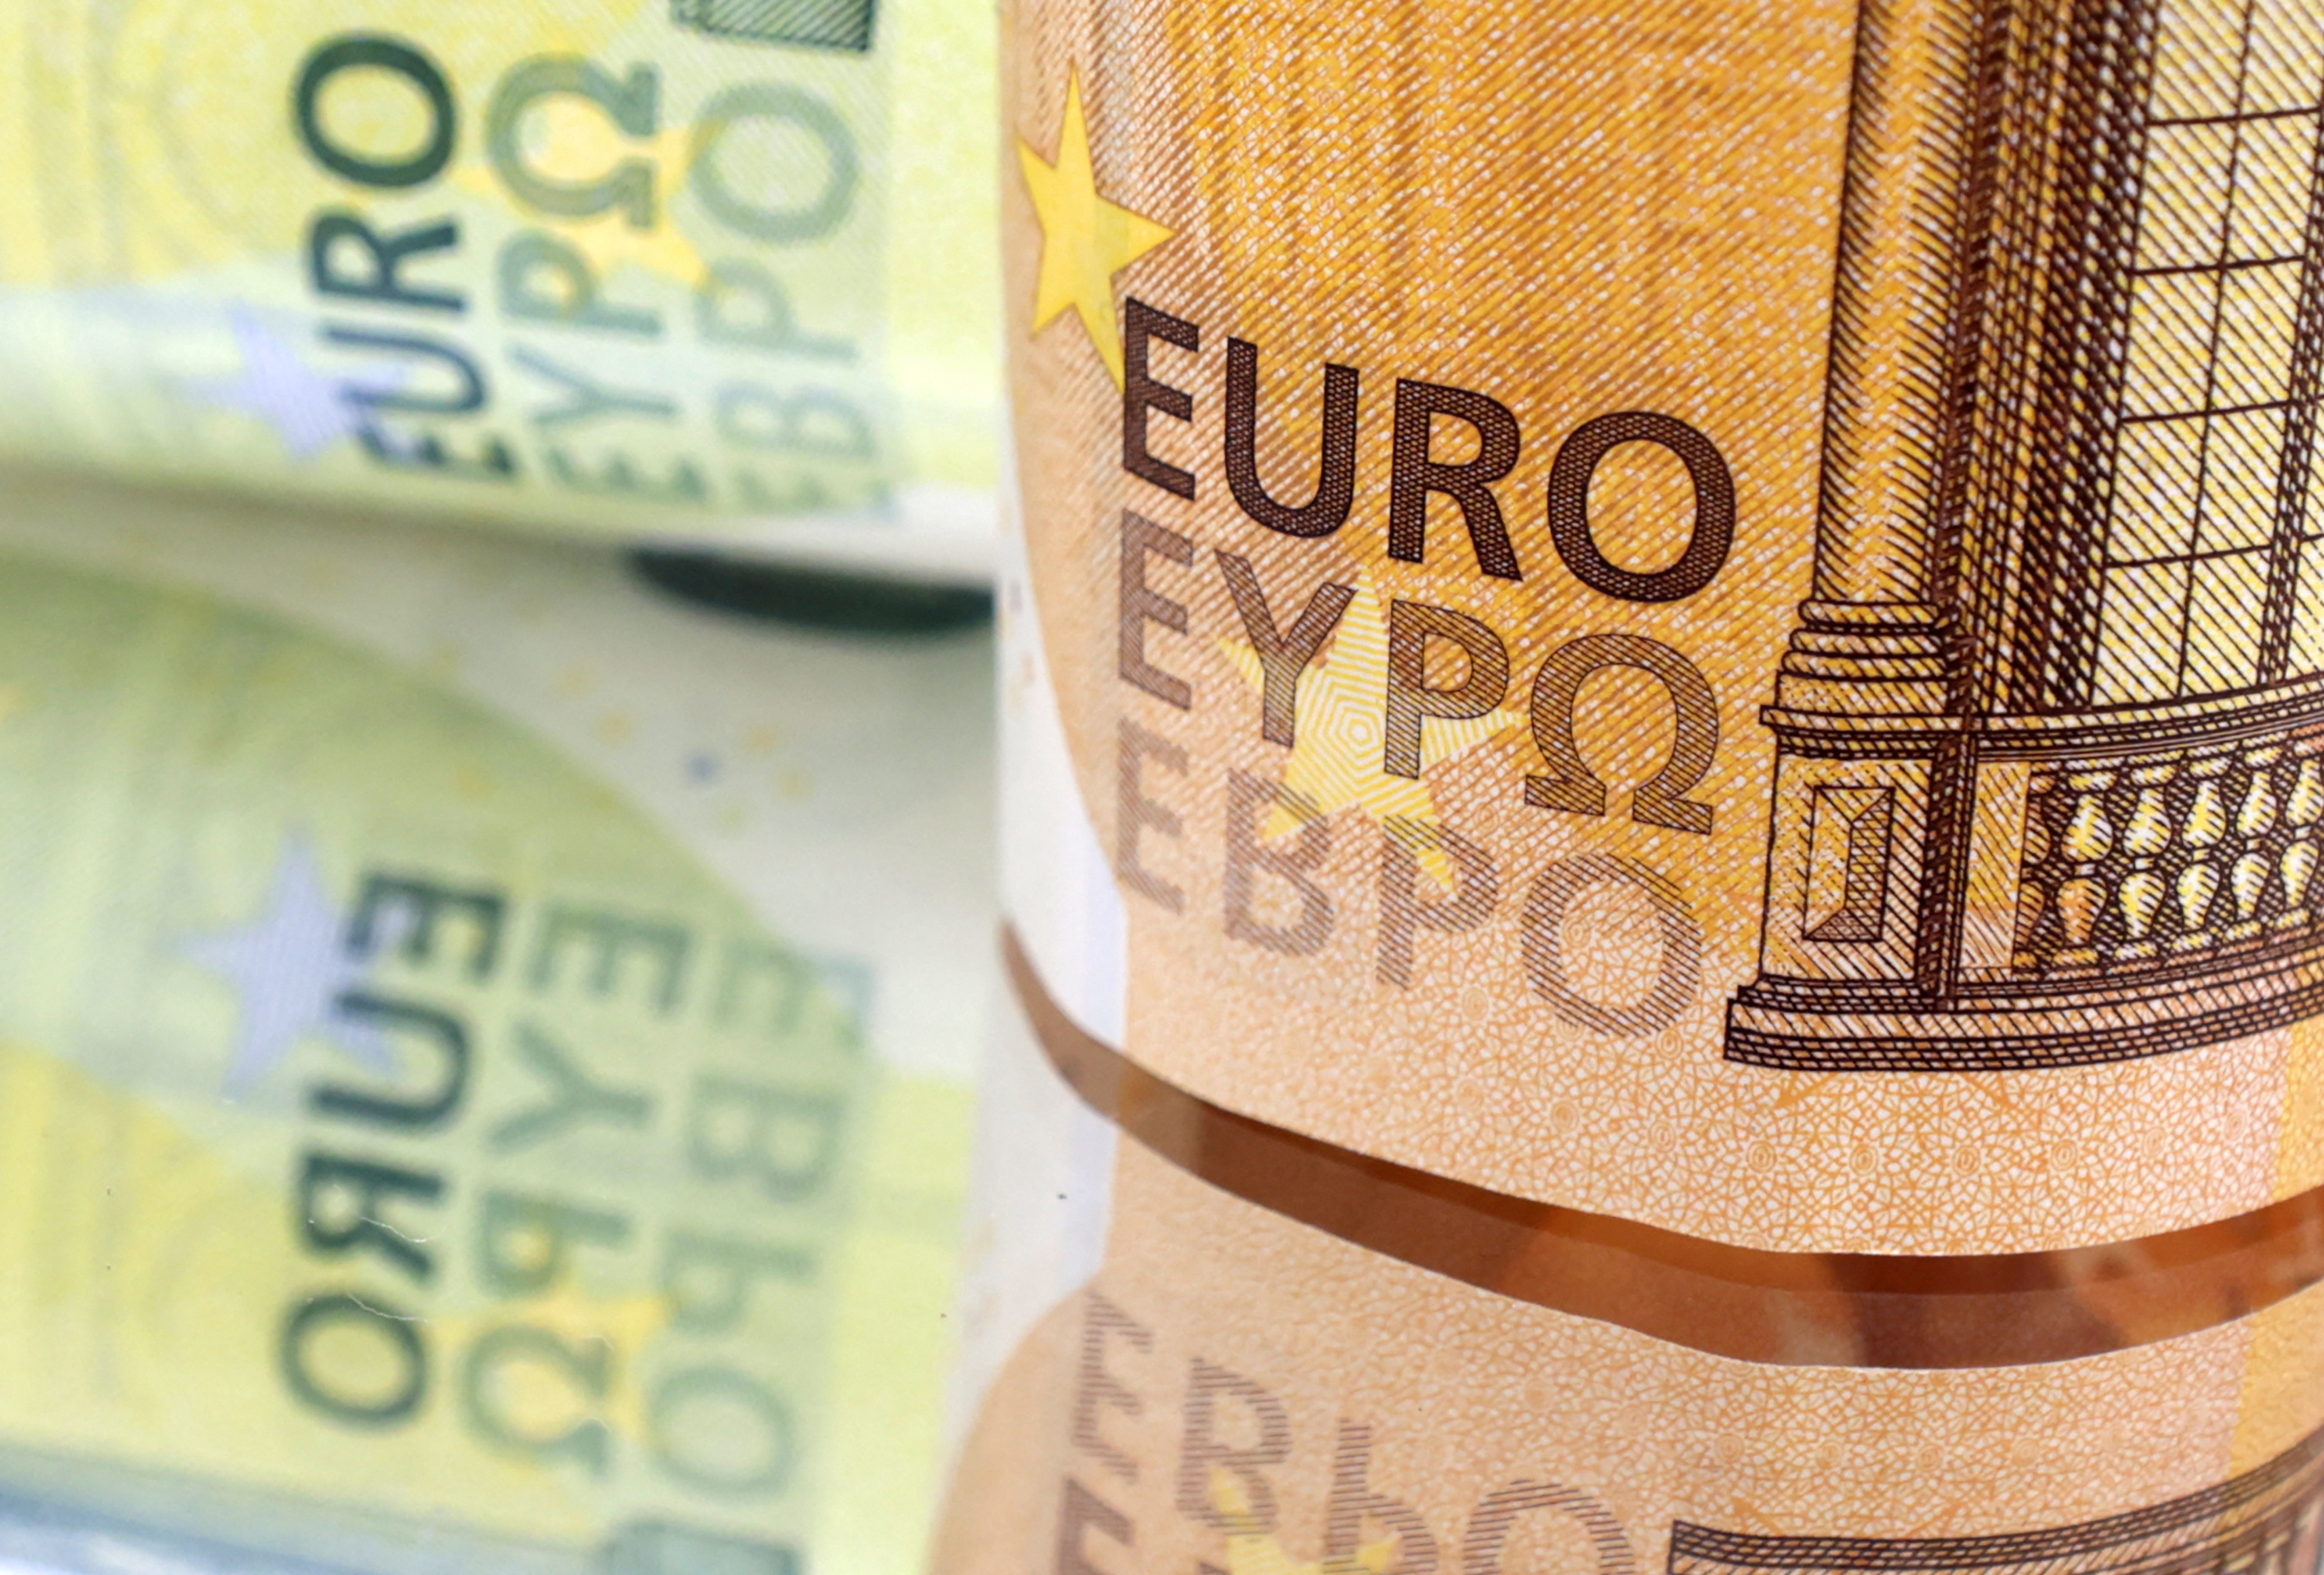 L'euro à son plus bas niveau depuis 20 ans : quelles sont les conséquences  de cette